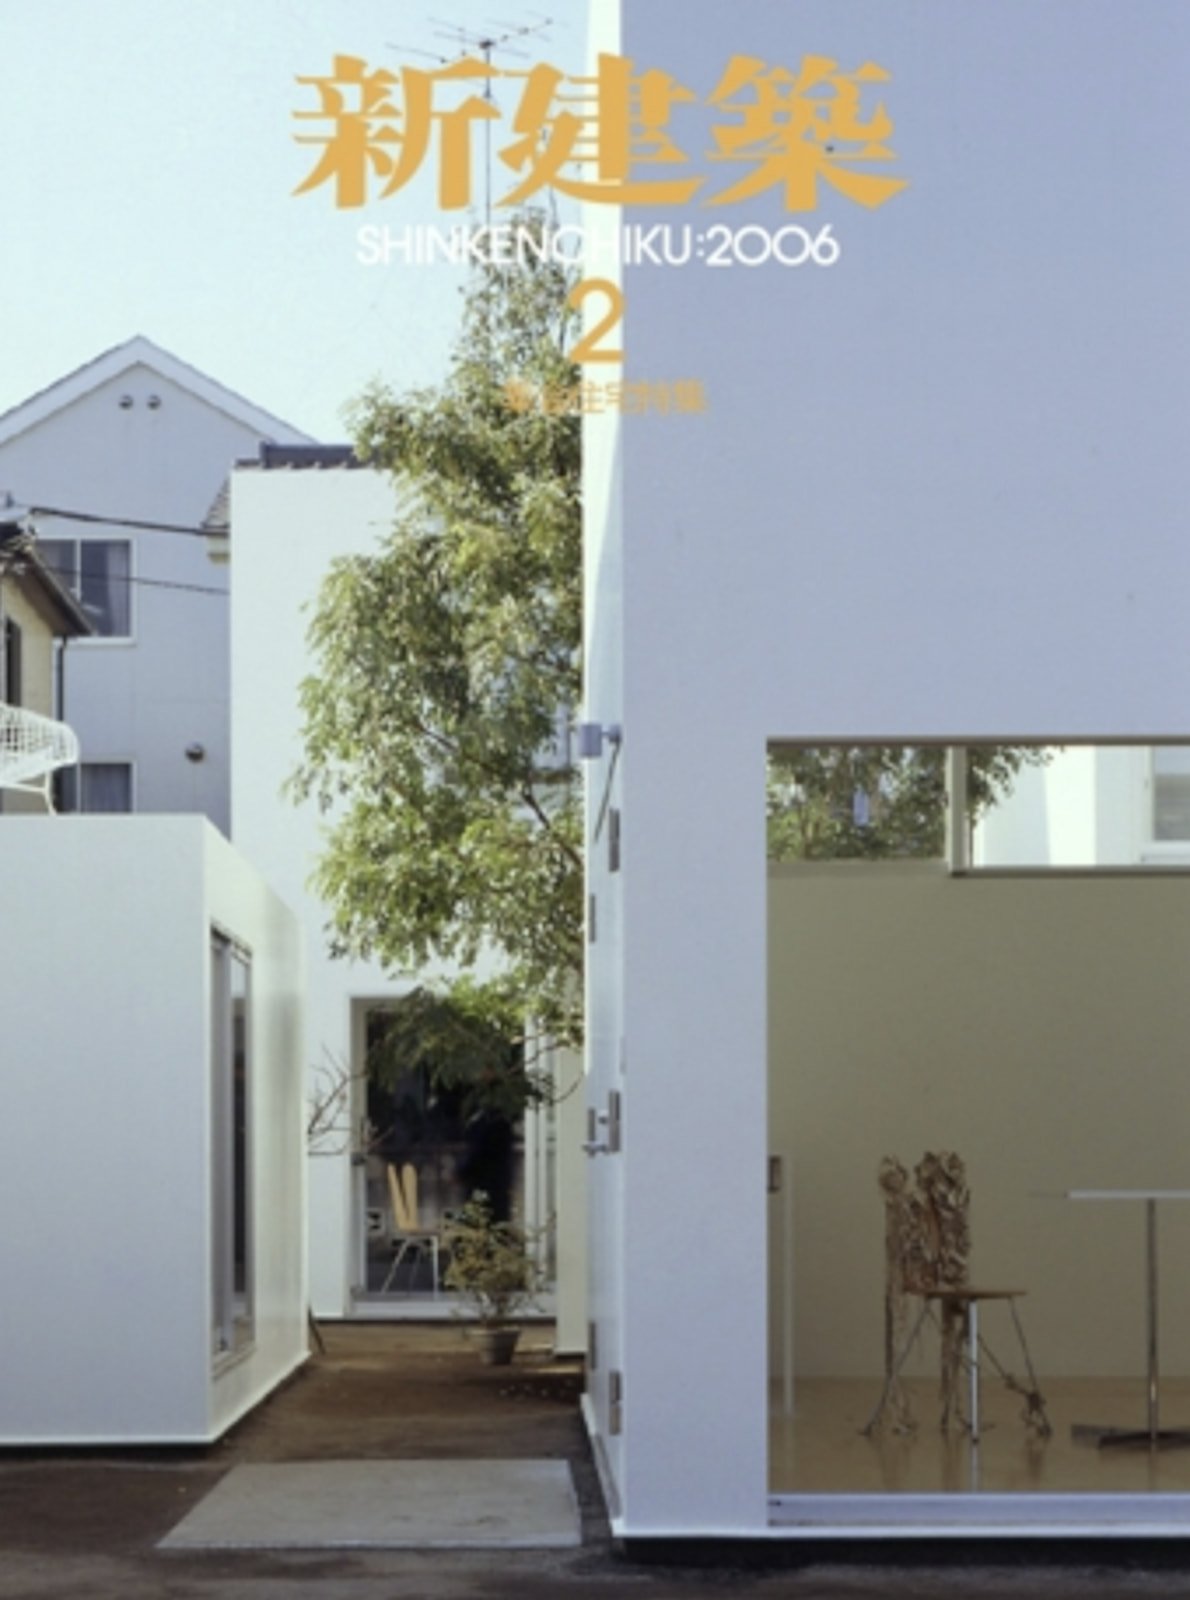 新建築 - New Architecture 200602 - Front.jpg